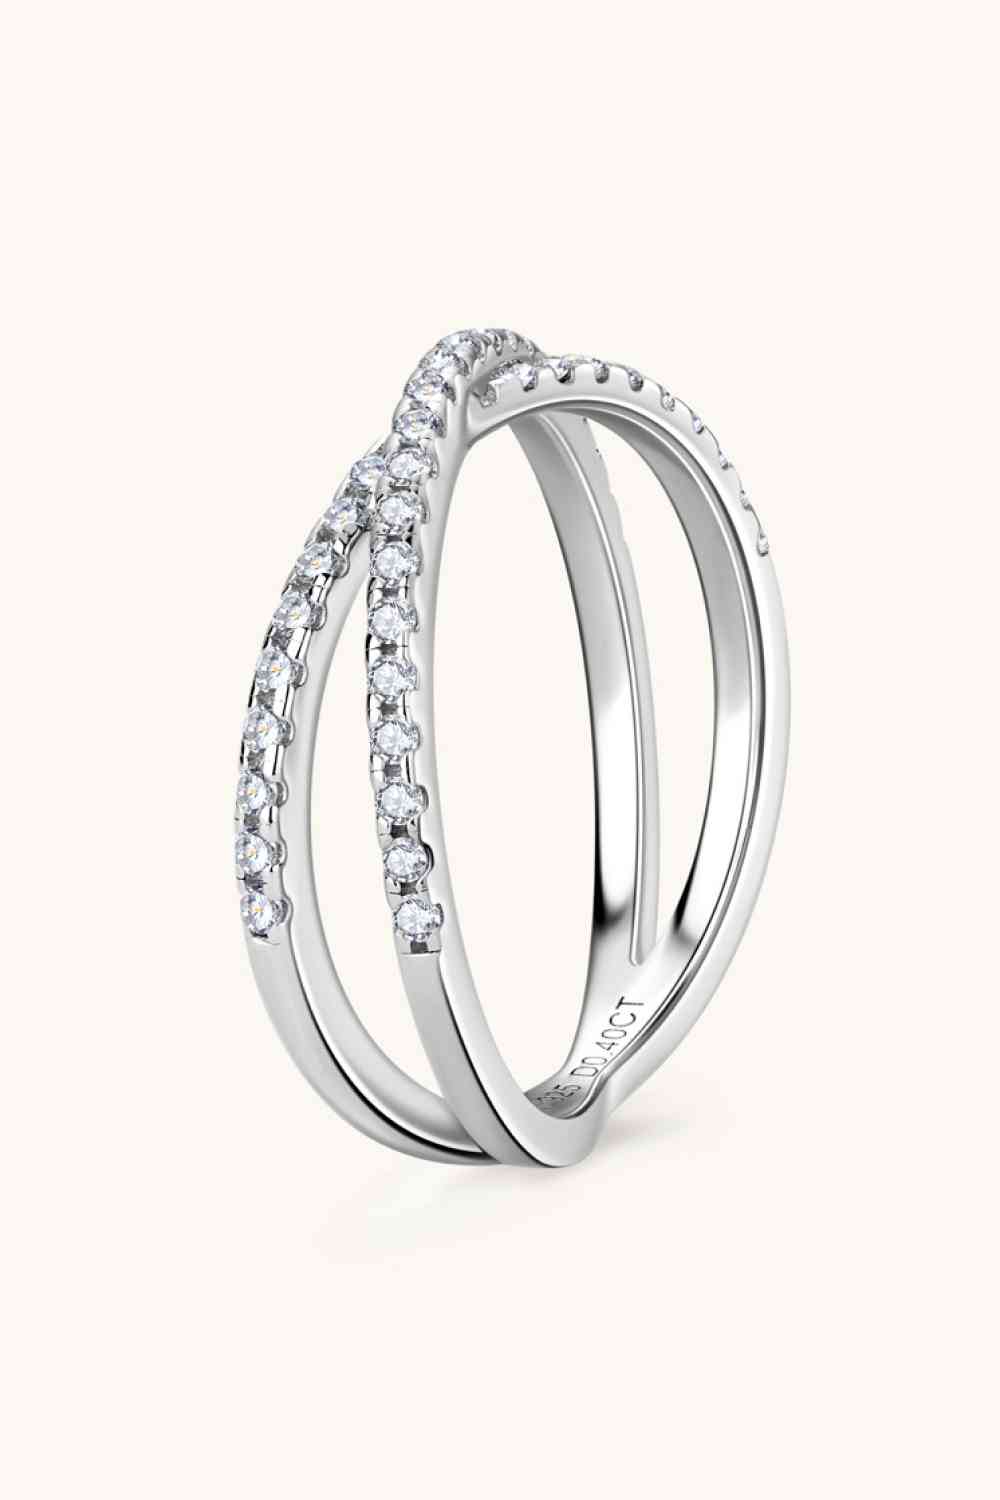 Moissanite 925 Sterling Silver Crisscross Ring - Stardust Diamonds